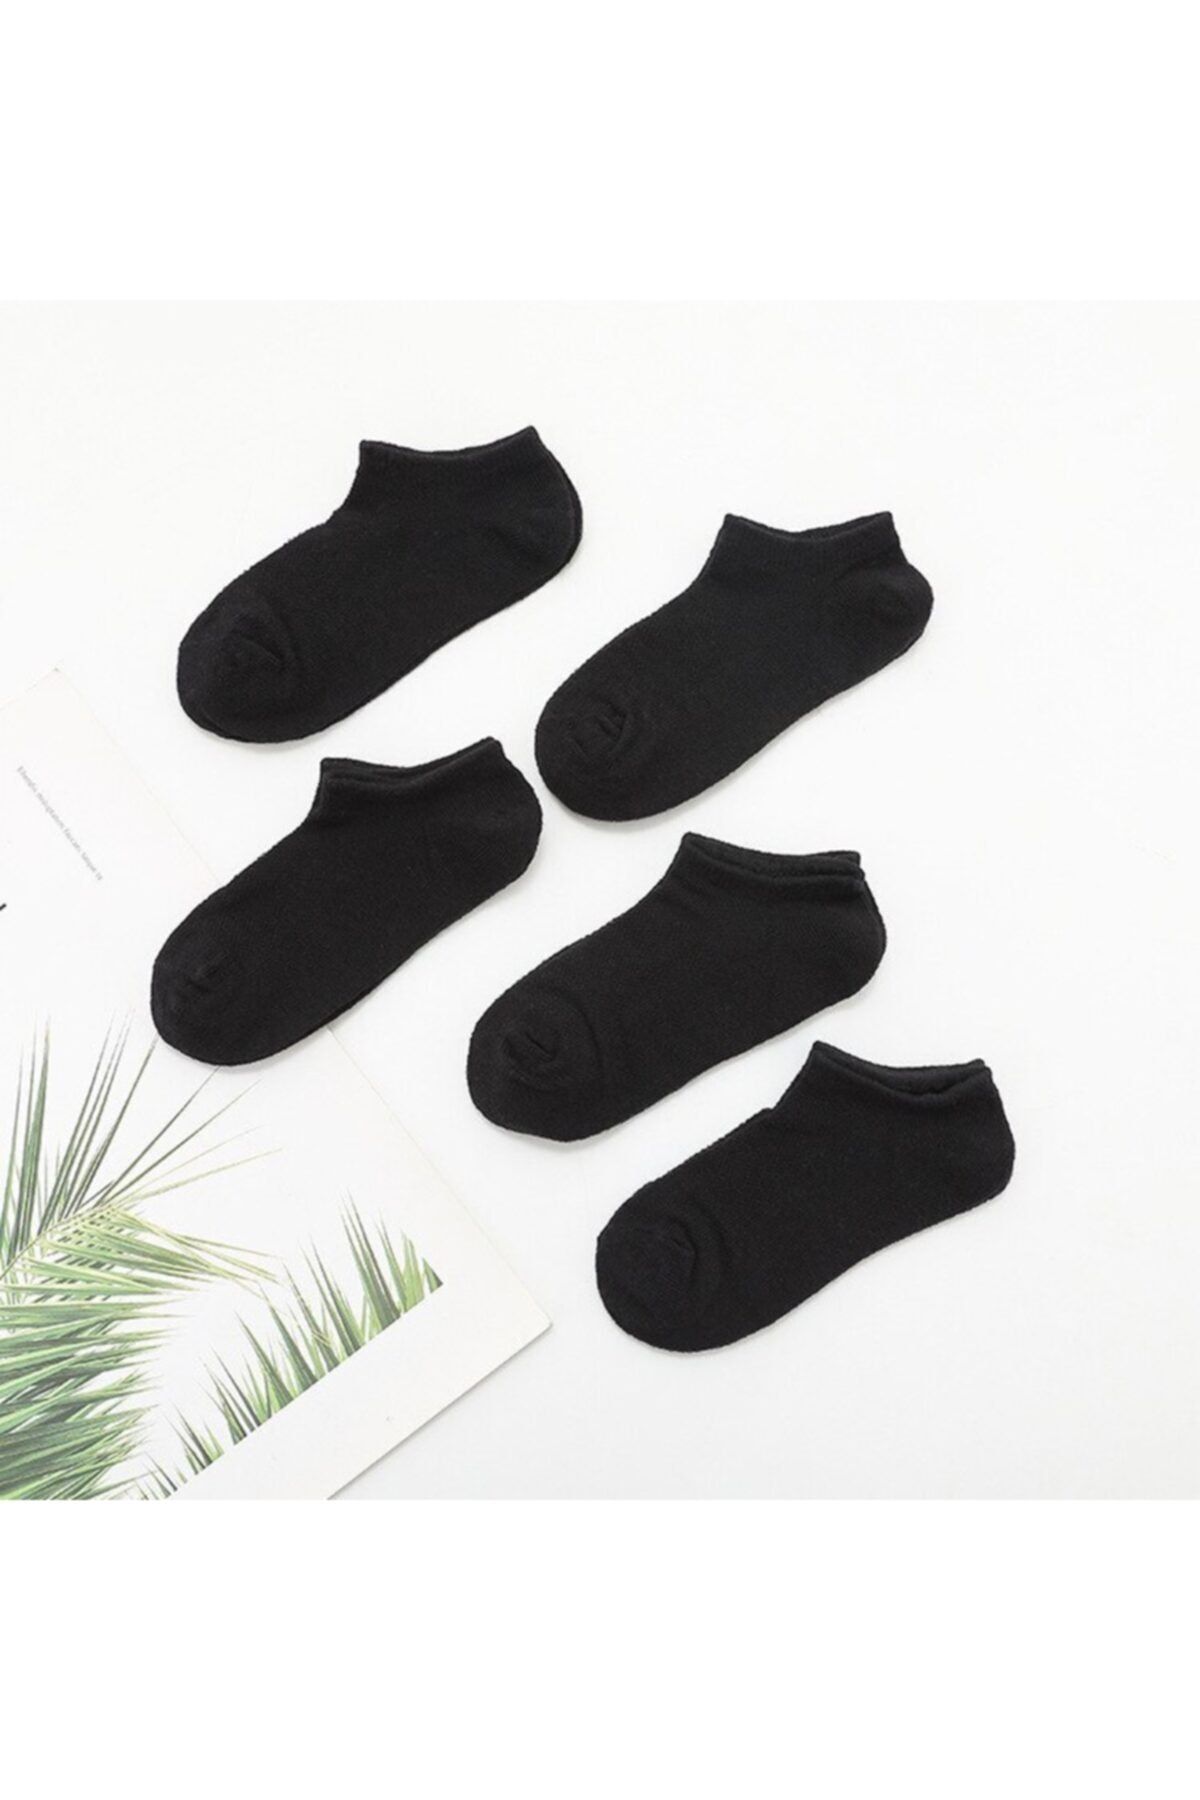 çorapmanya 5 Çift Modal Siyah Kadın Patik Çorap Bilek Boy